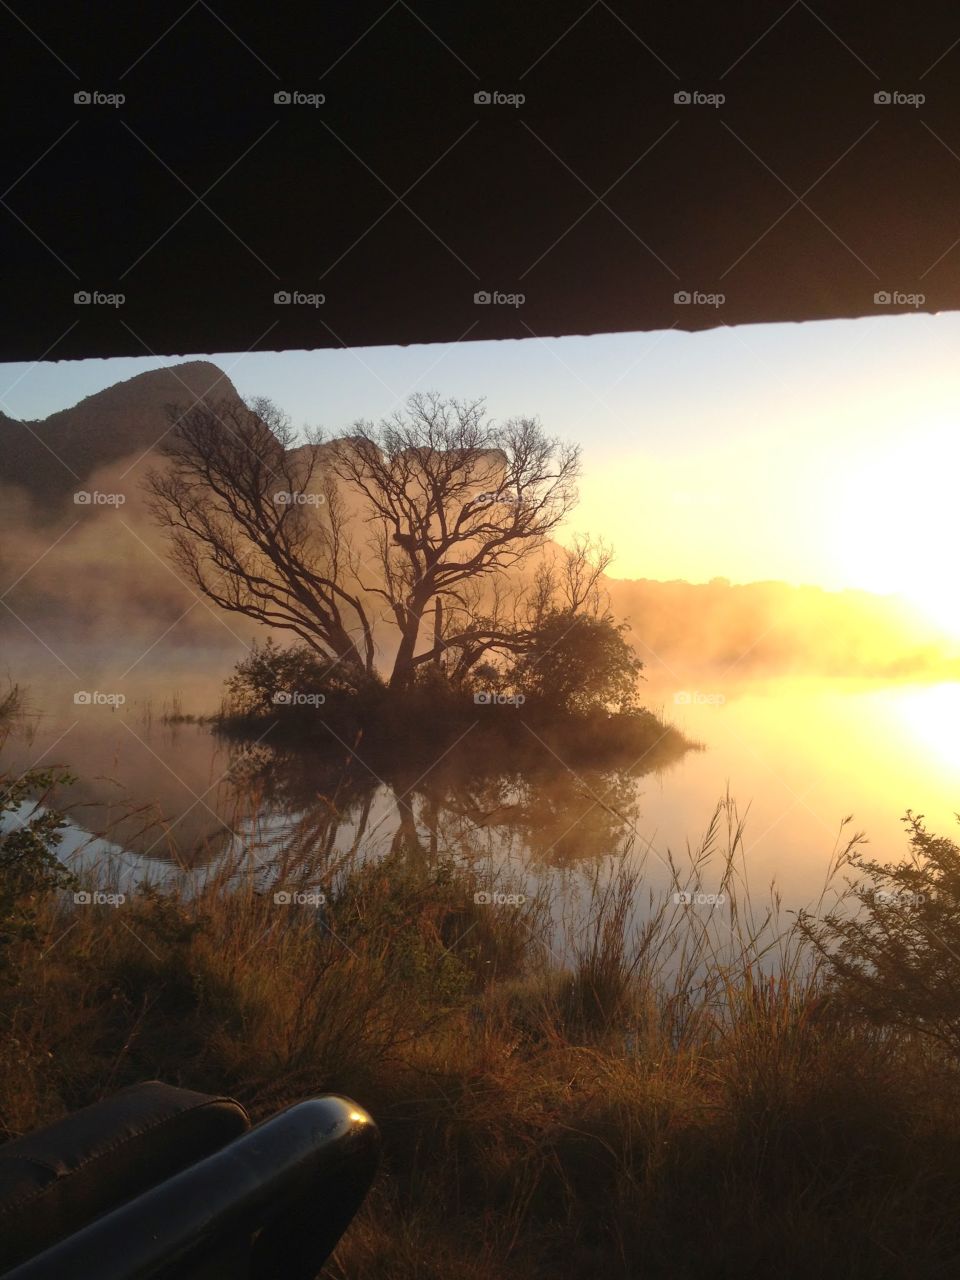 Sunrise Africa. A sunrise in Africa